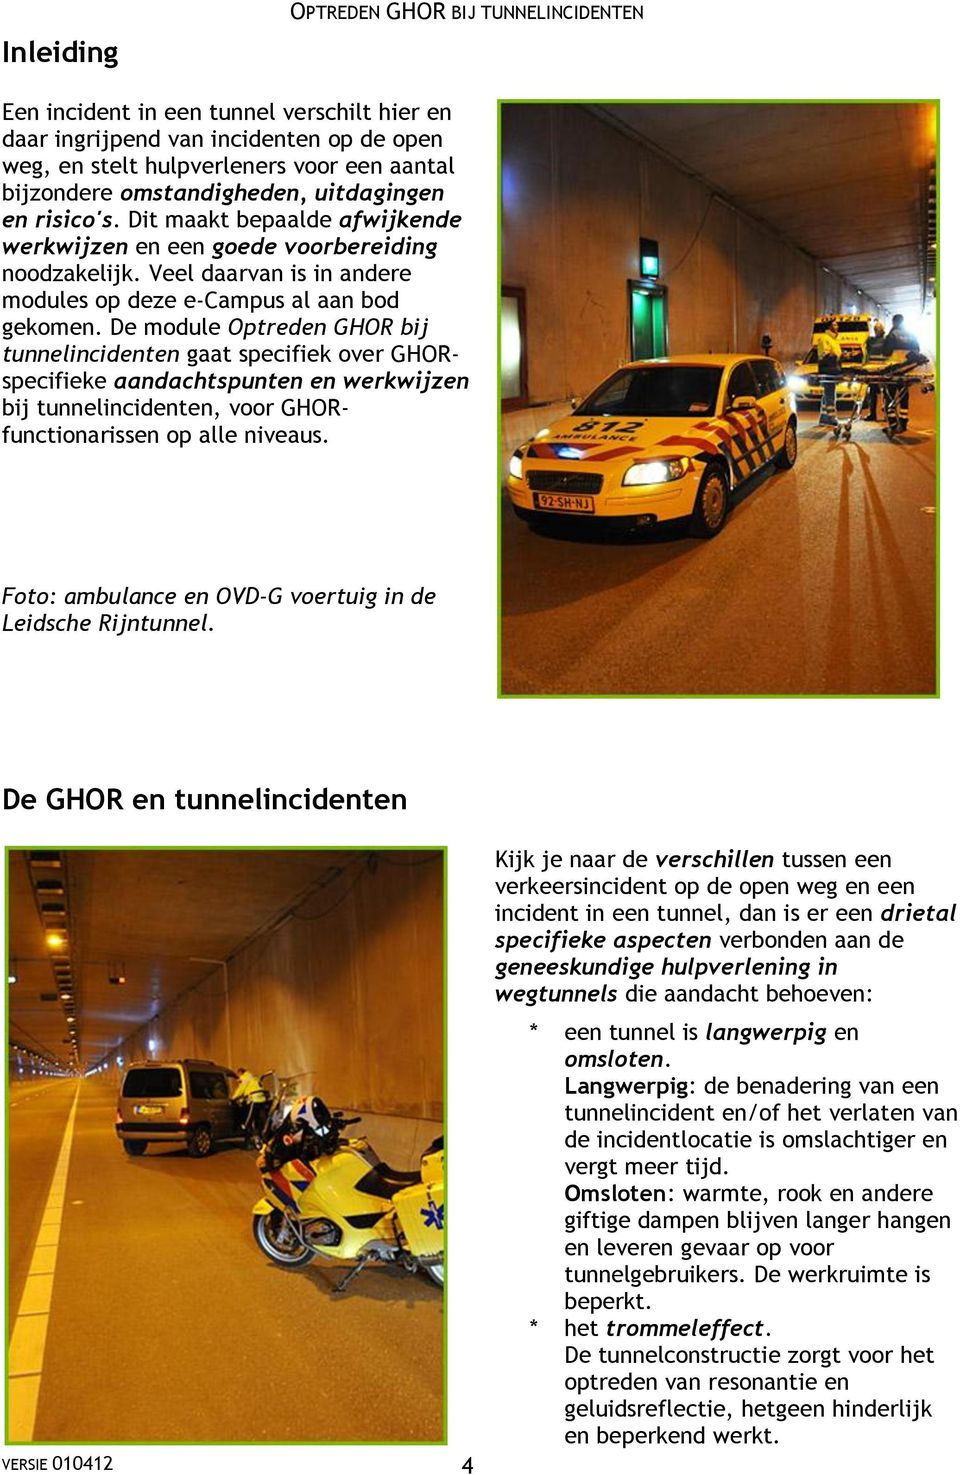 De module Optreden GHOR bij tunnelincidenten gaat specifiek over GHORspecifieke aandachtspunten en werkwijzen bij tunnelincidenten, voor GHORfunctionarissen op alle niveaus.